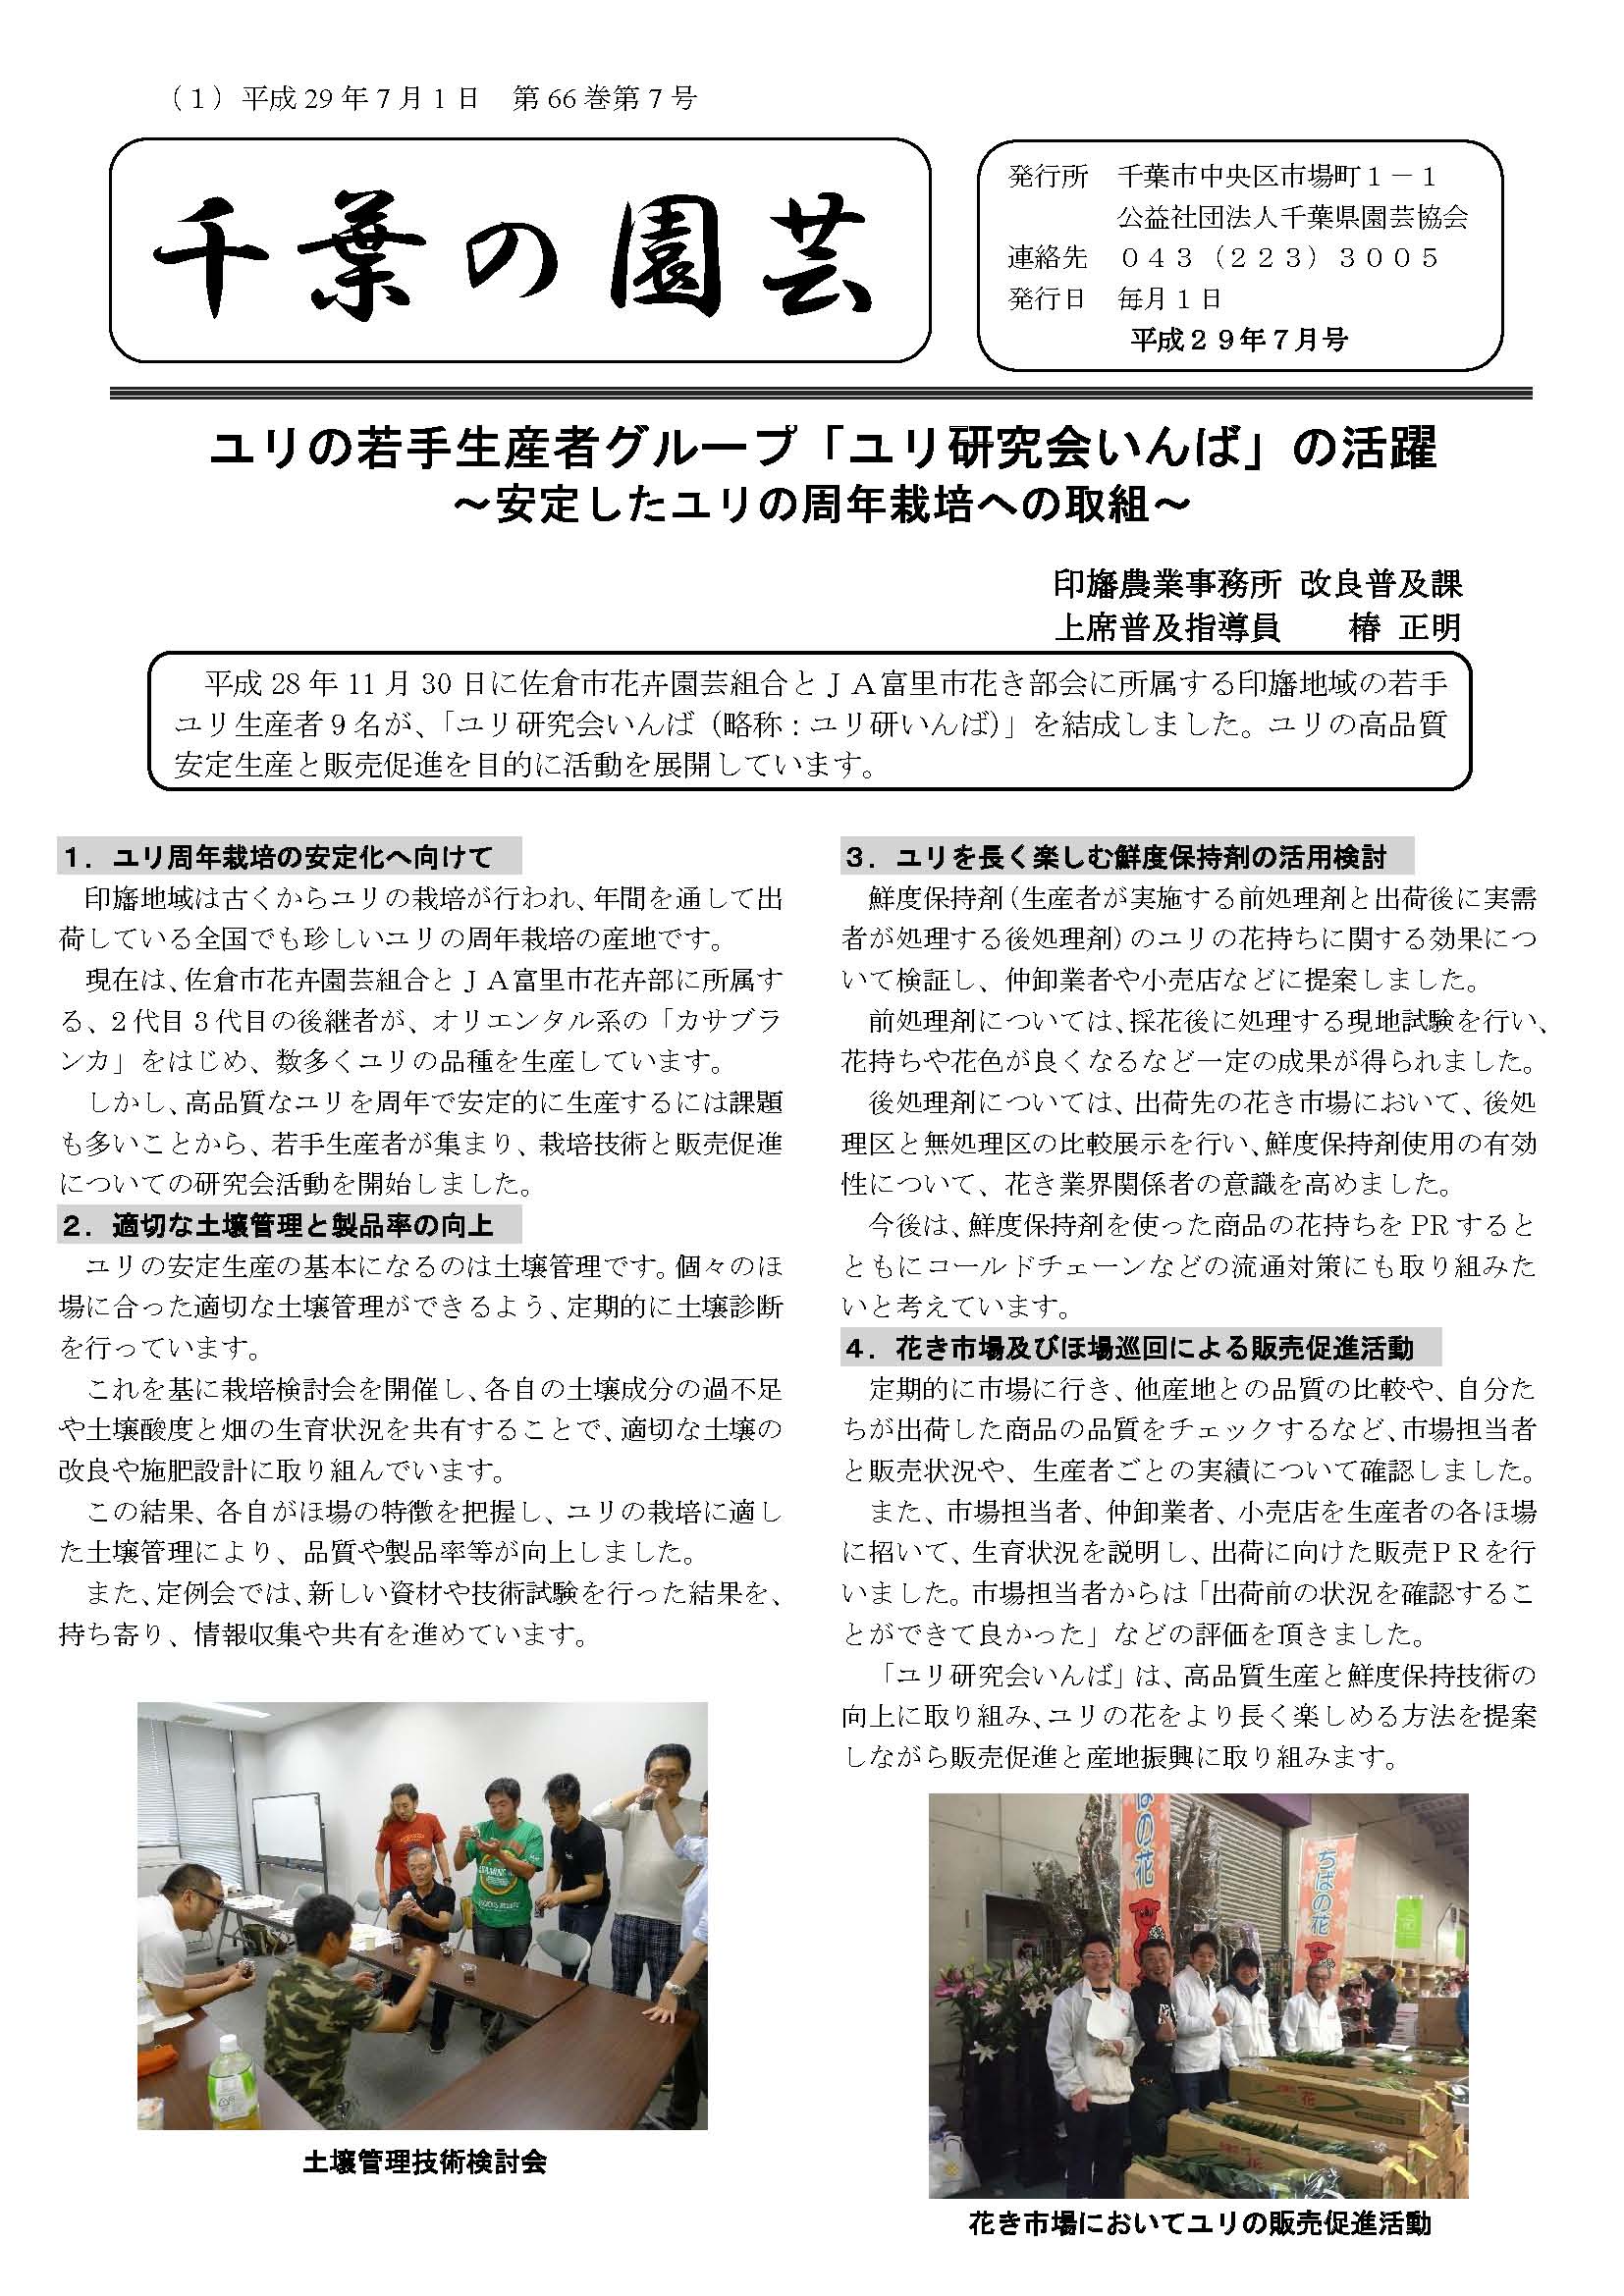 広報誌「千葉の園芸」平成29年7月号